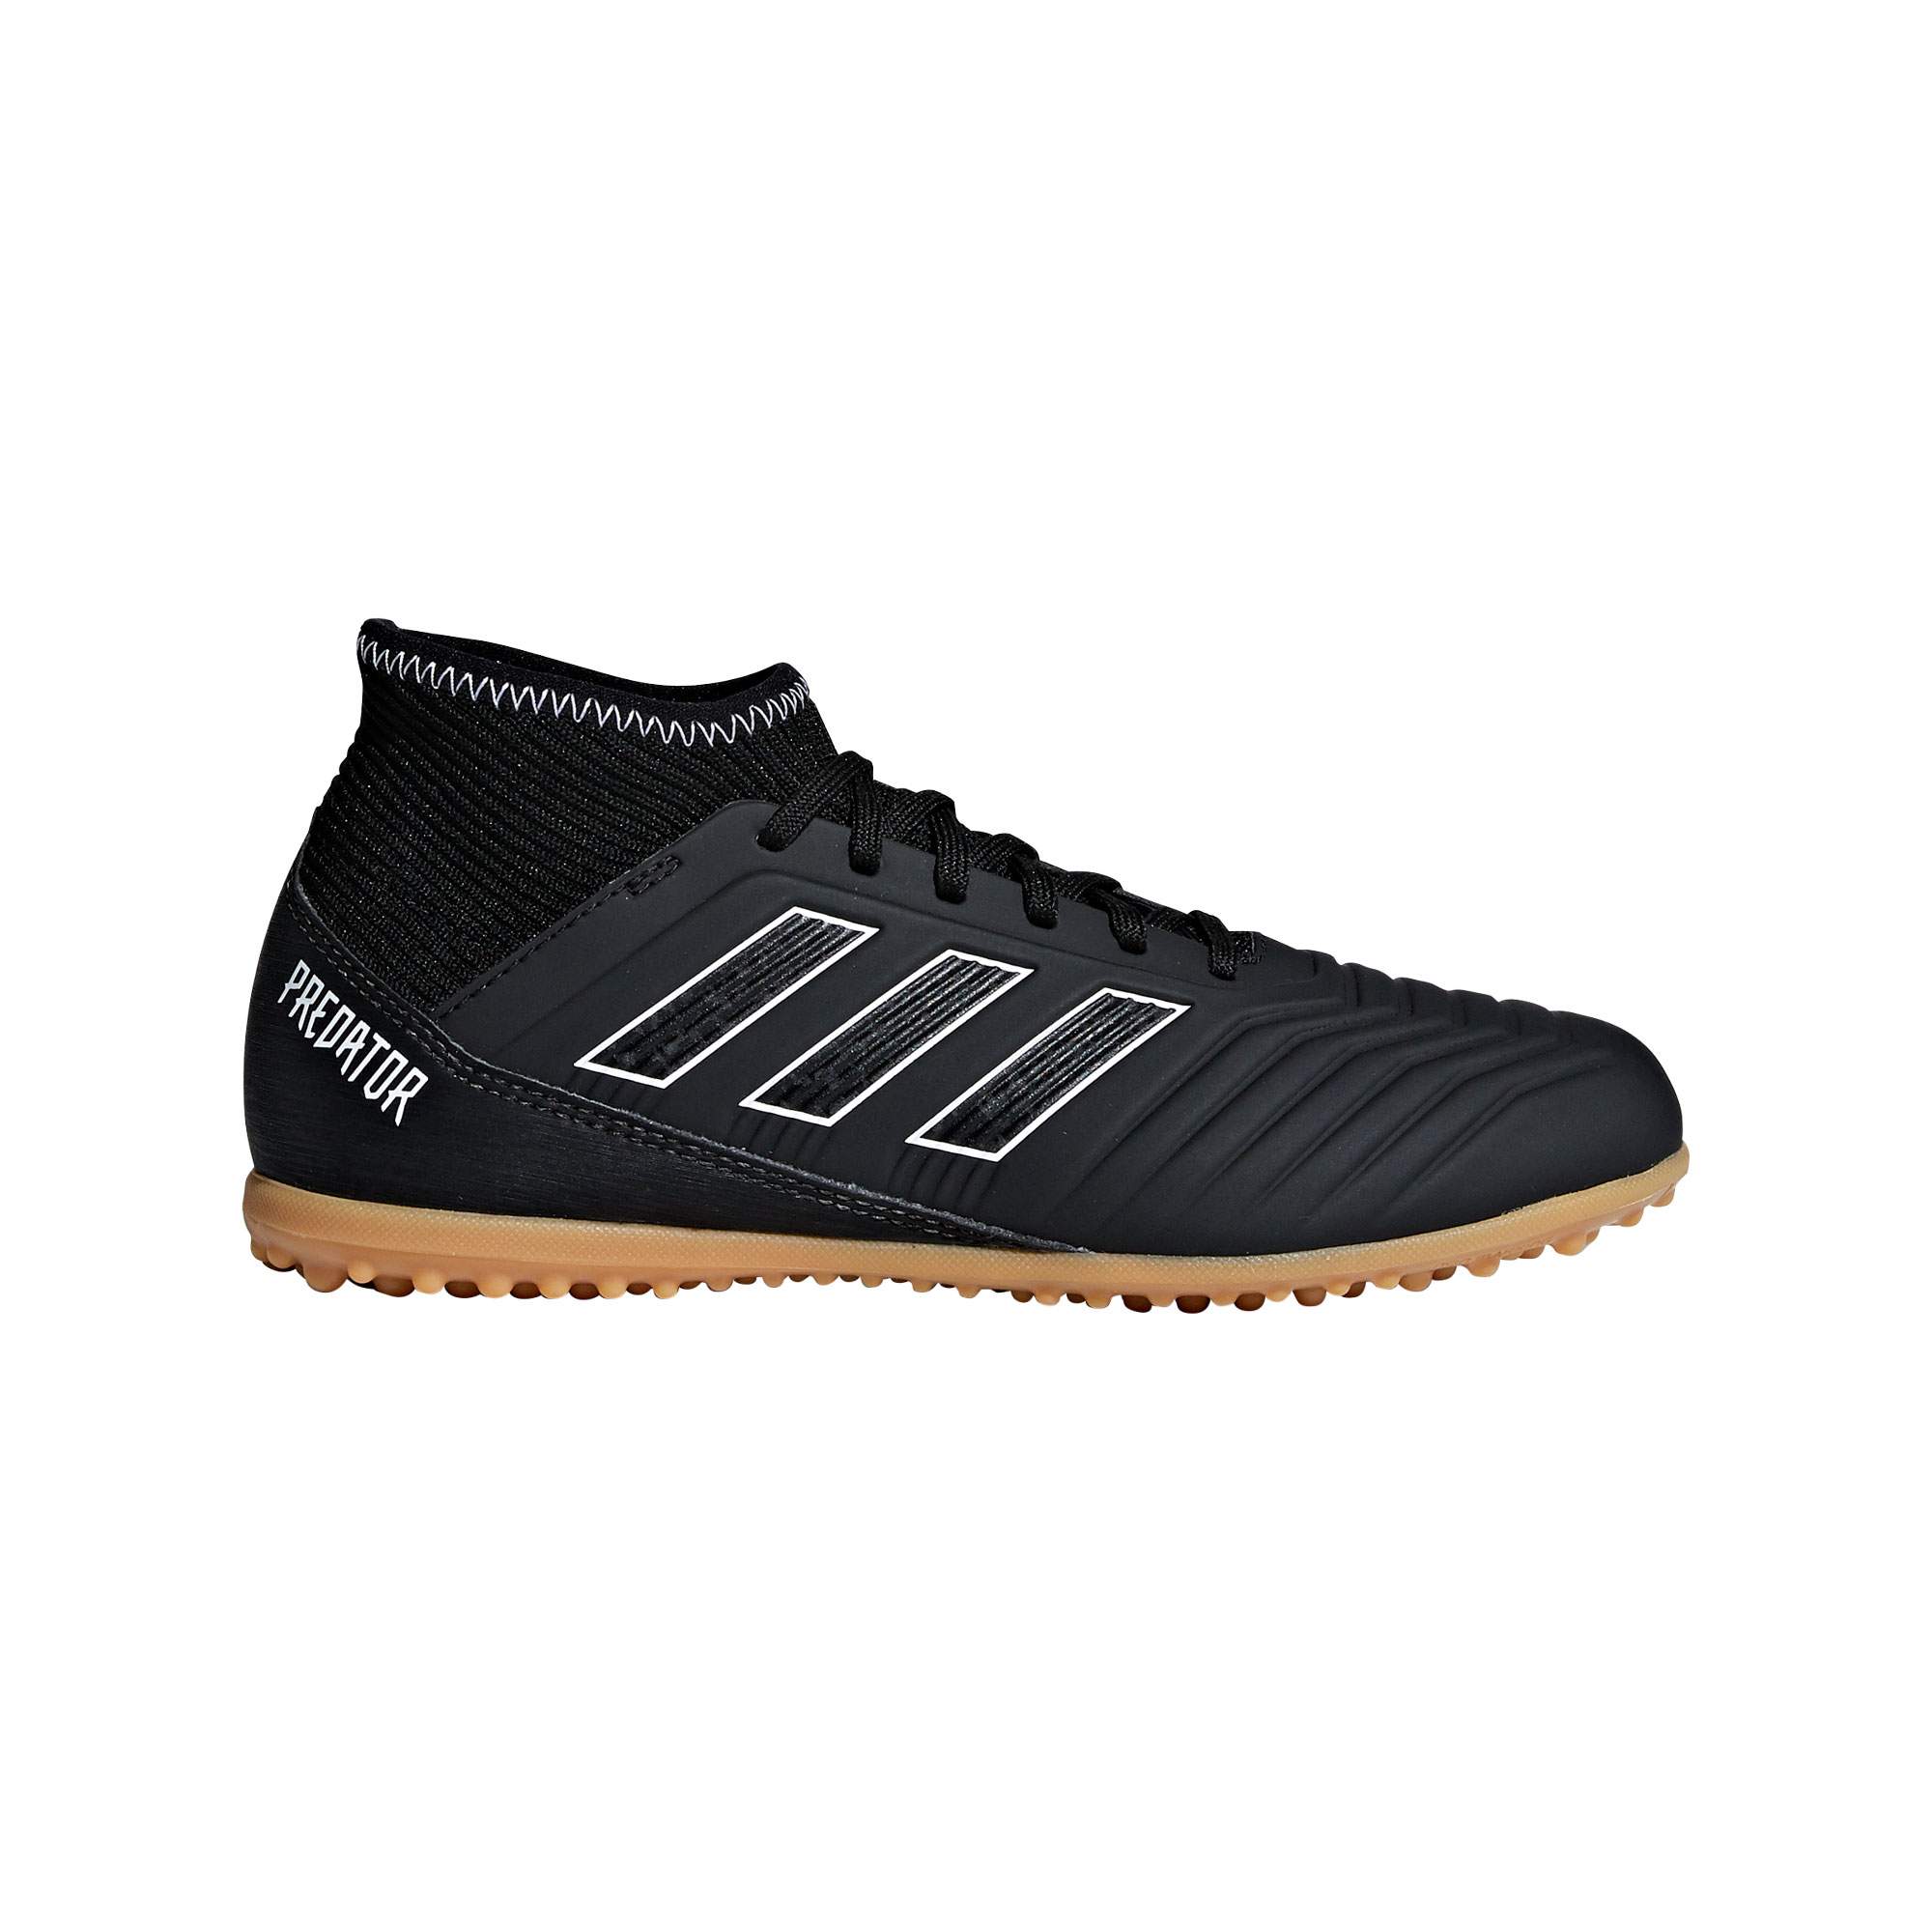 wees onder de indruk Eigenaardig Pence Adidas Predator Tango 18.3 TF DB2329 voetbalschoenen junior core black